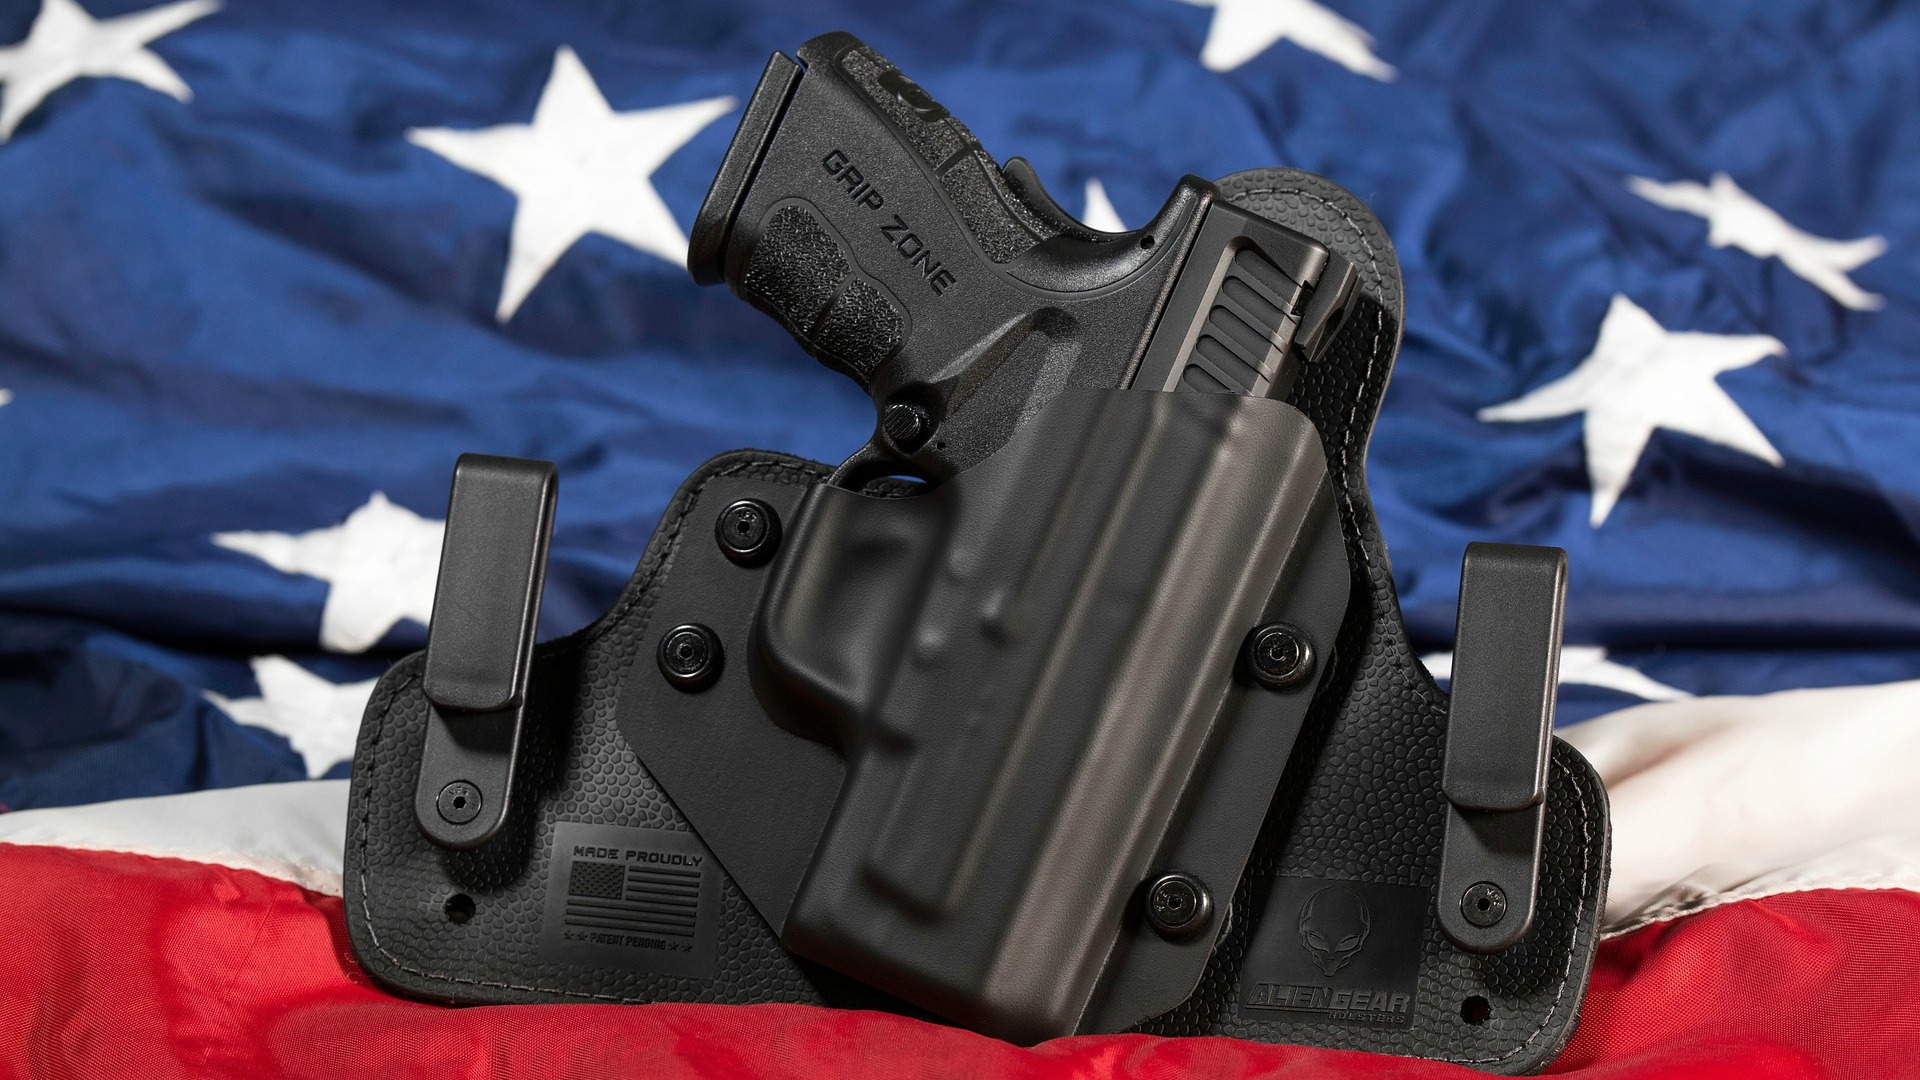 Le port d'armes aux États-Unis, entre droit et devoir